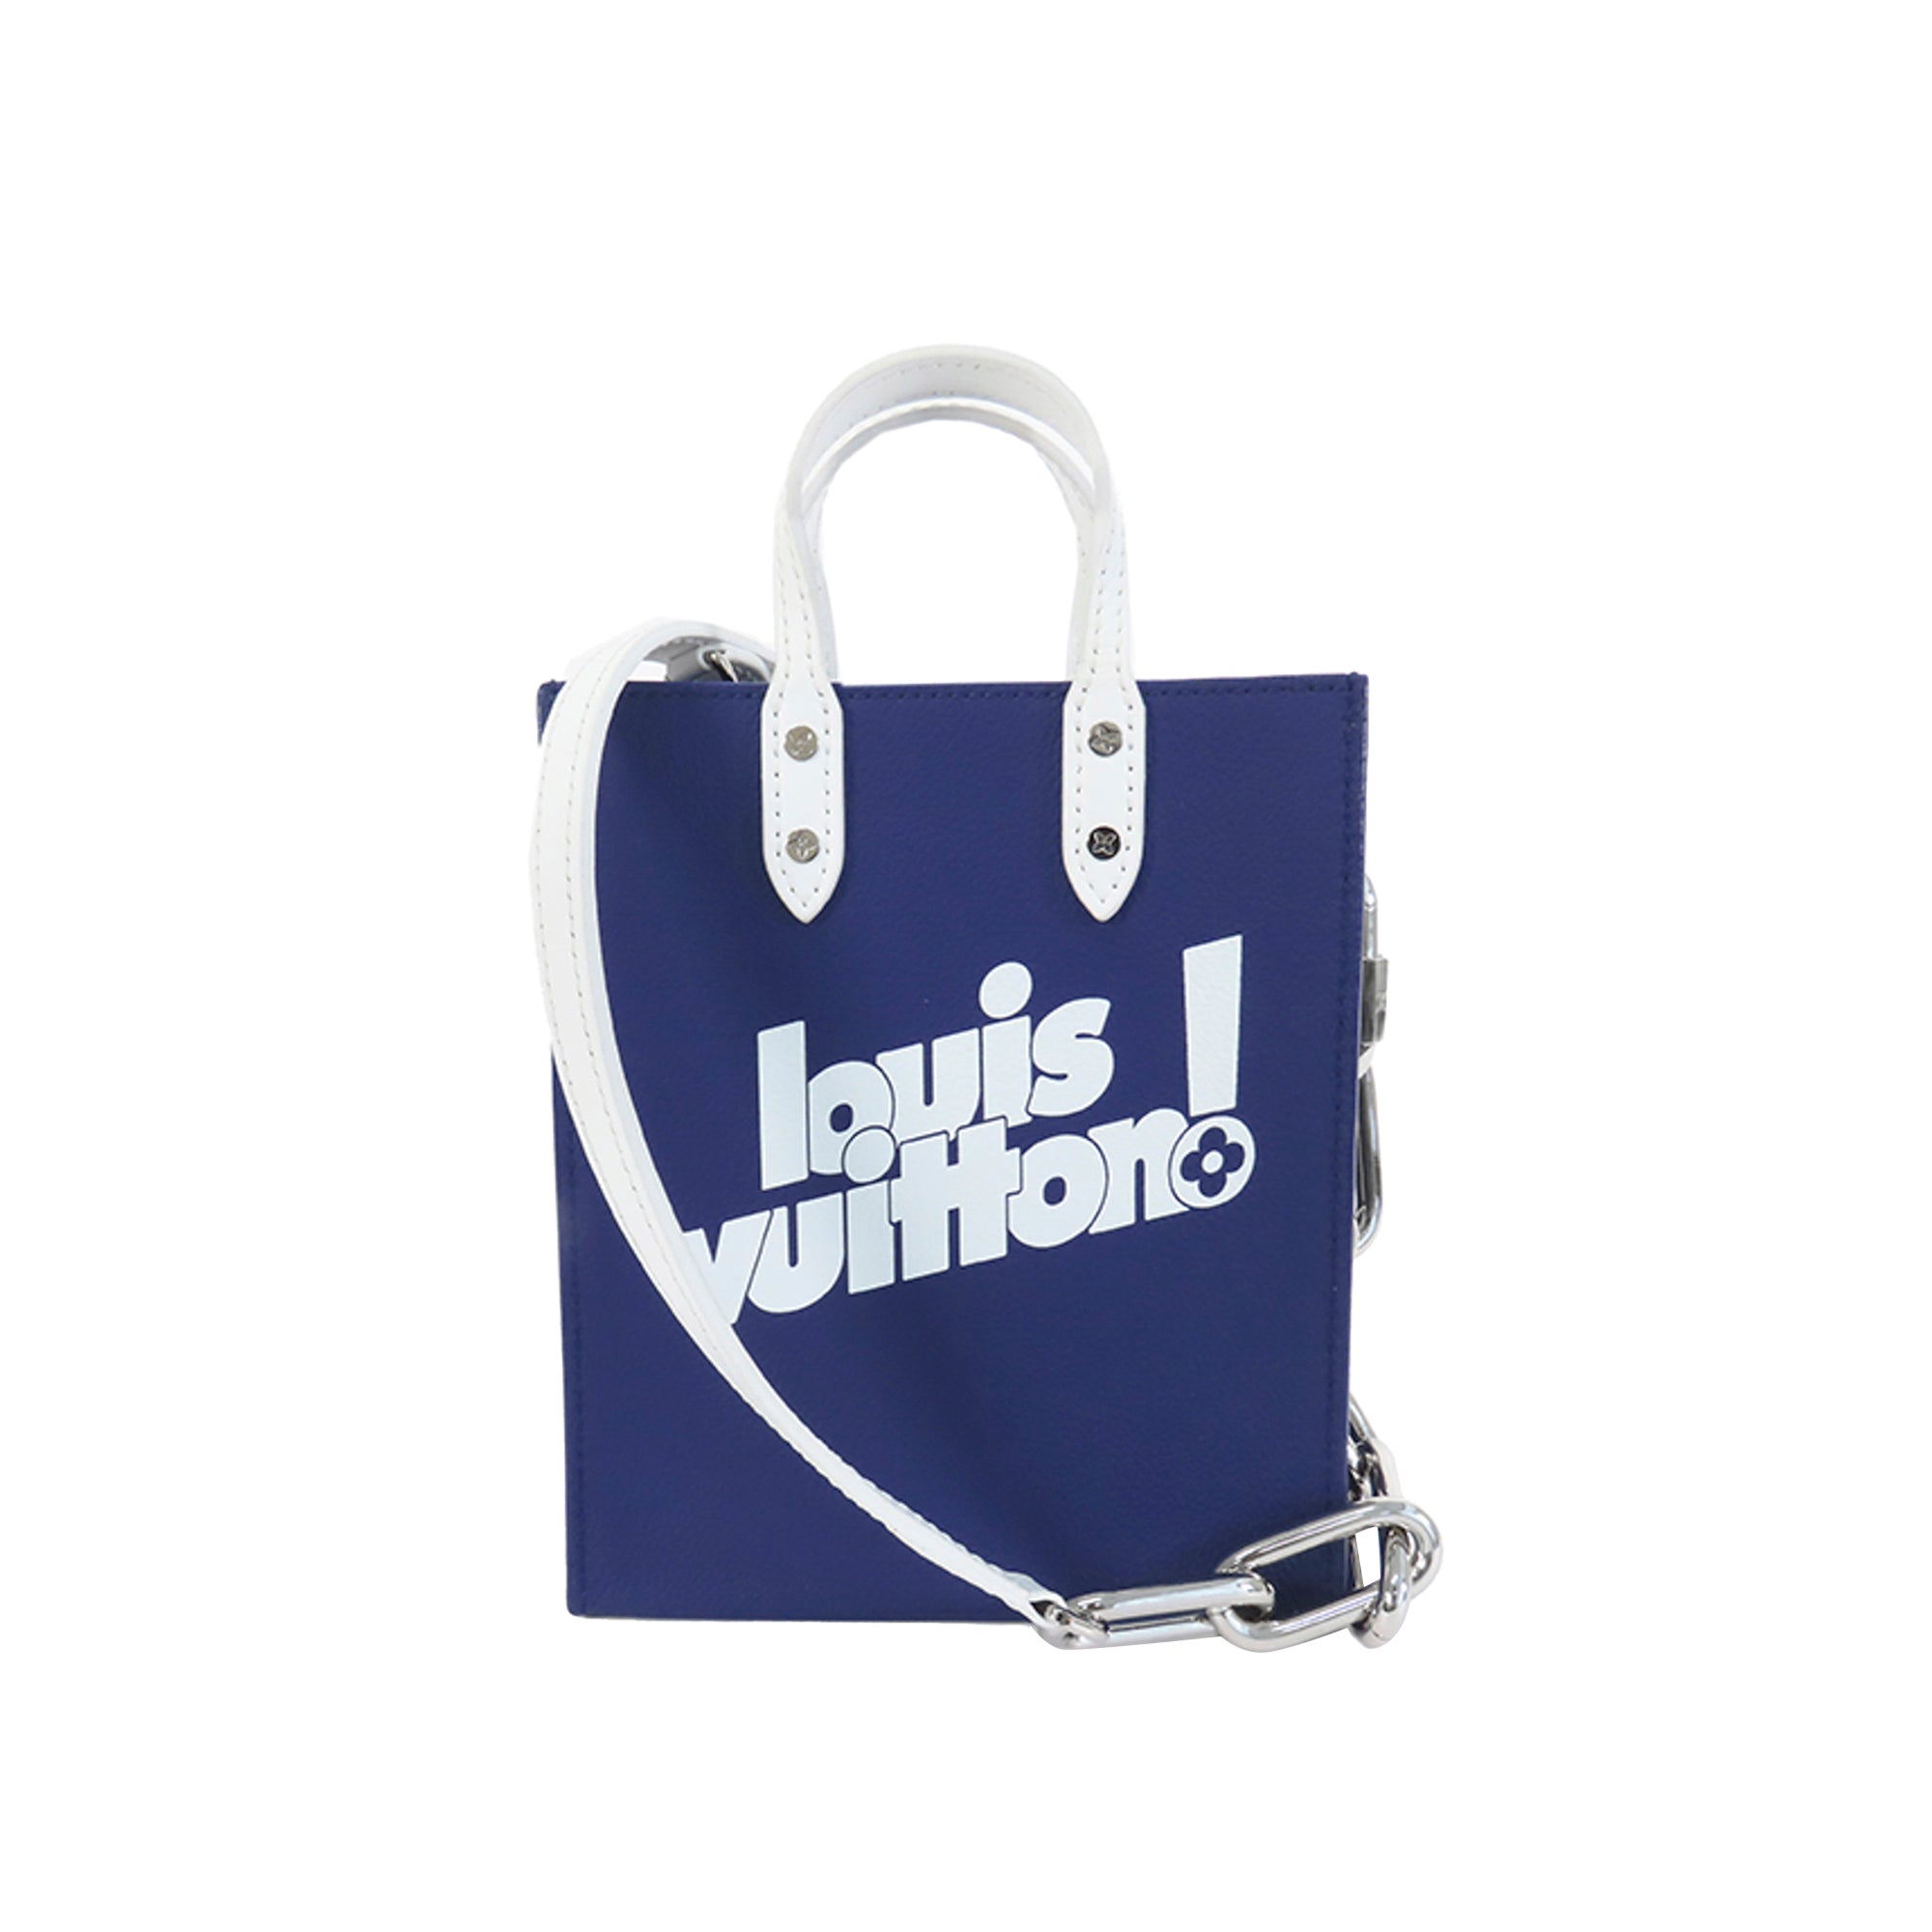 Louis Vuitton - Authenticated Twist Handbag - Leather Blue Plain for Women, Good Condition